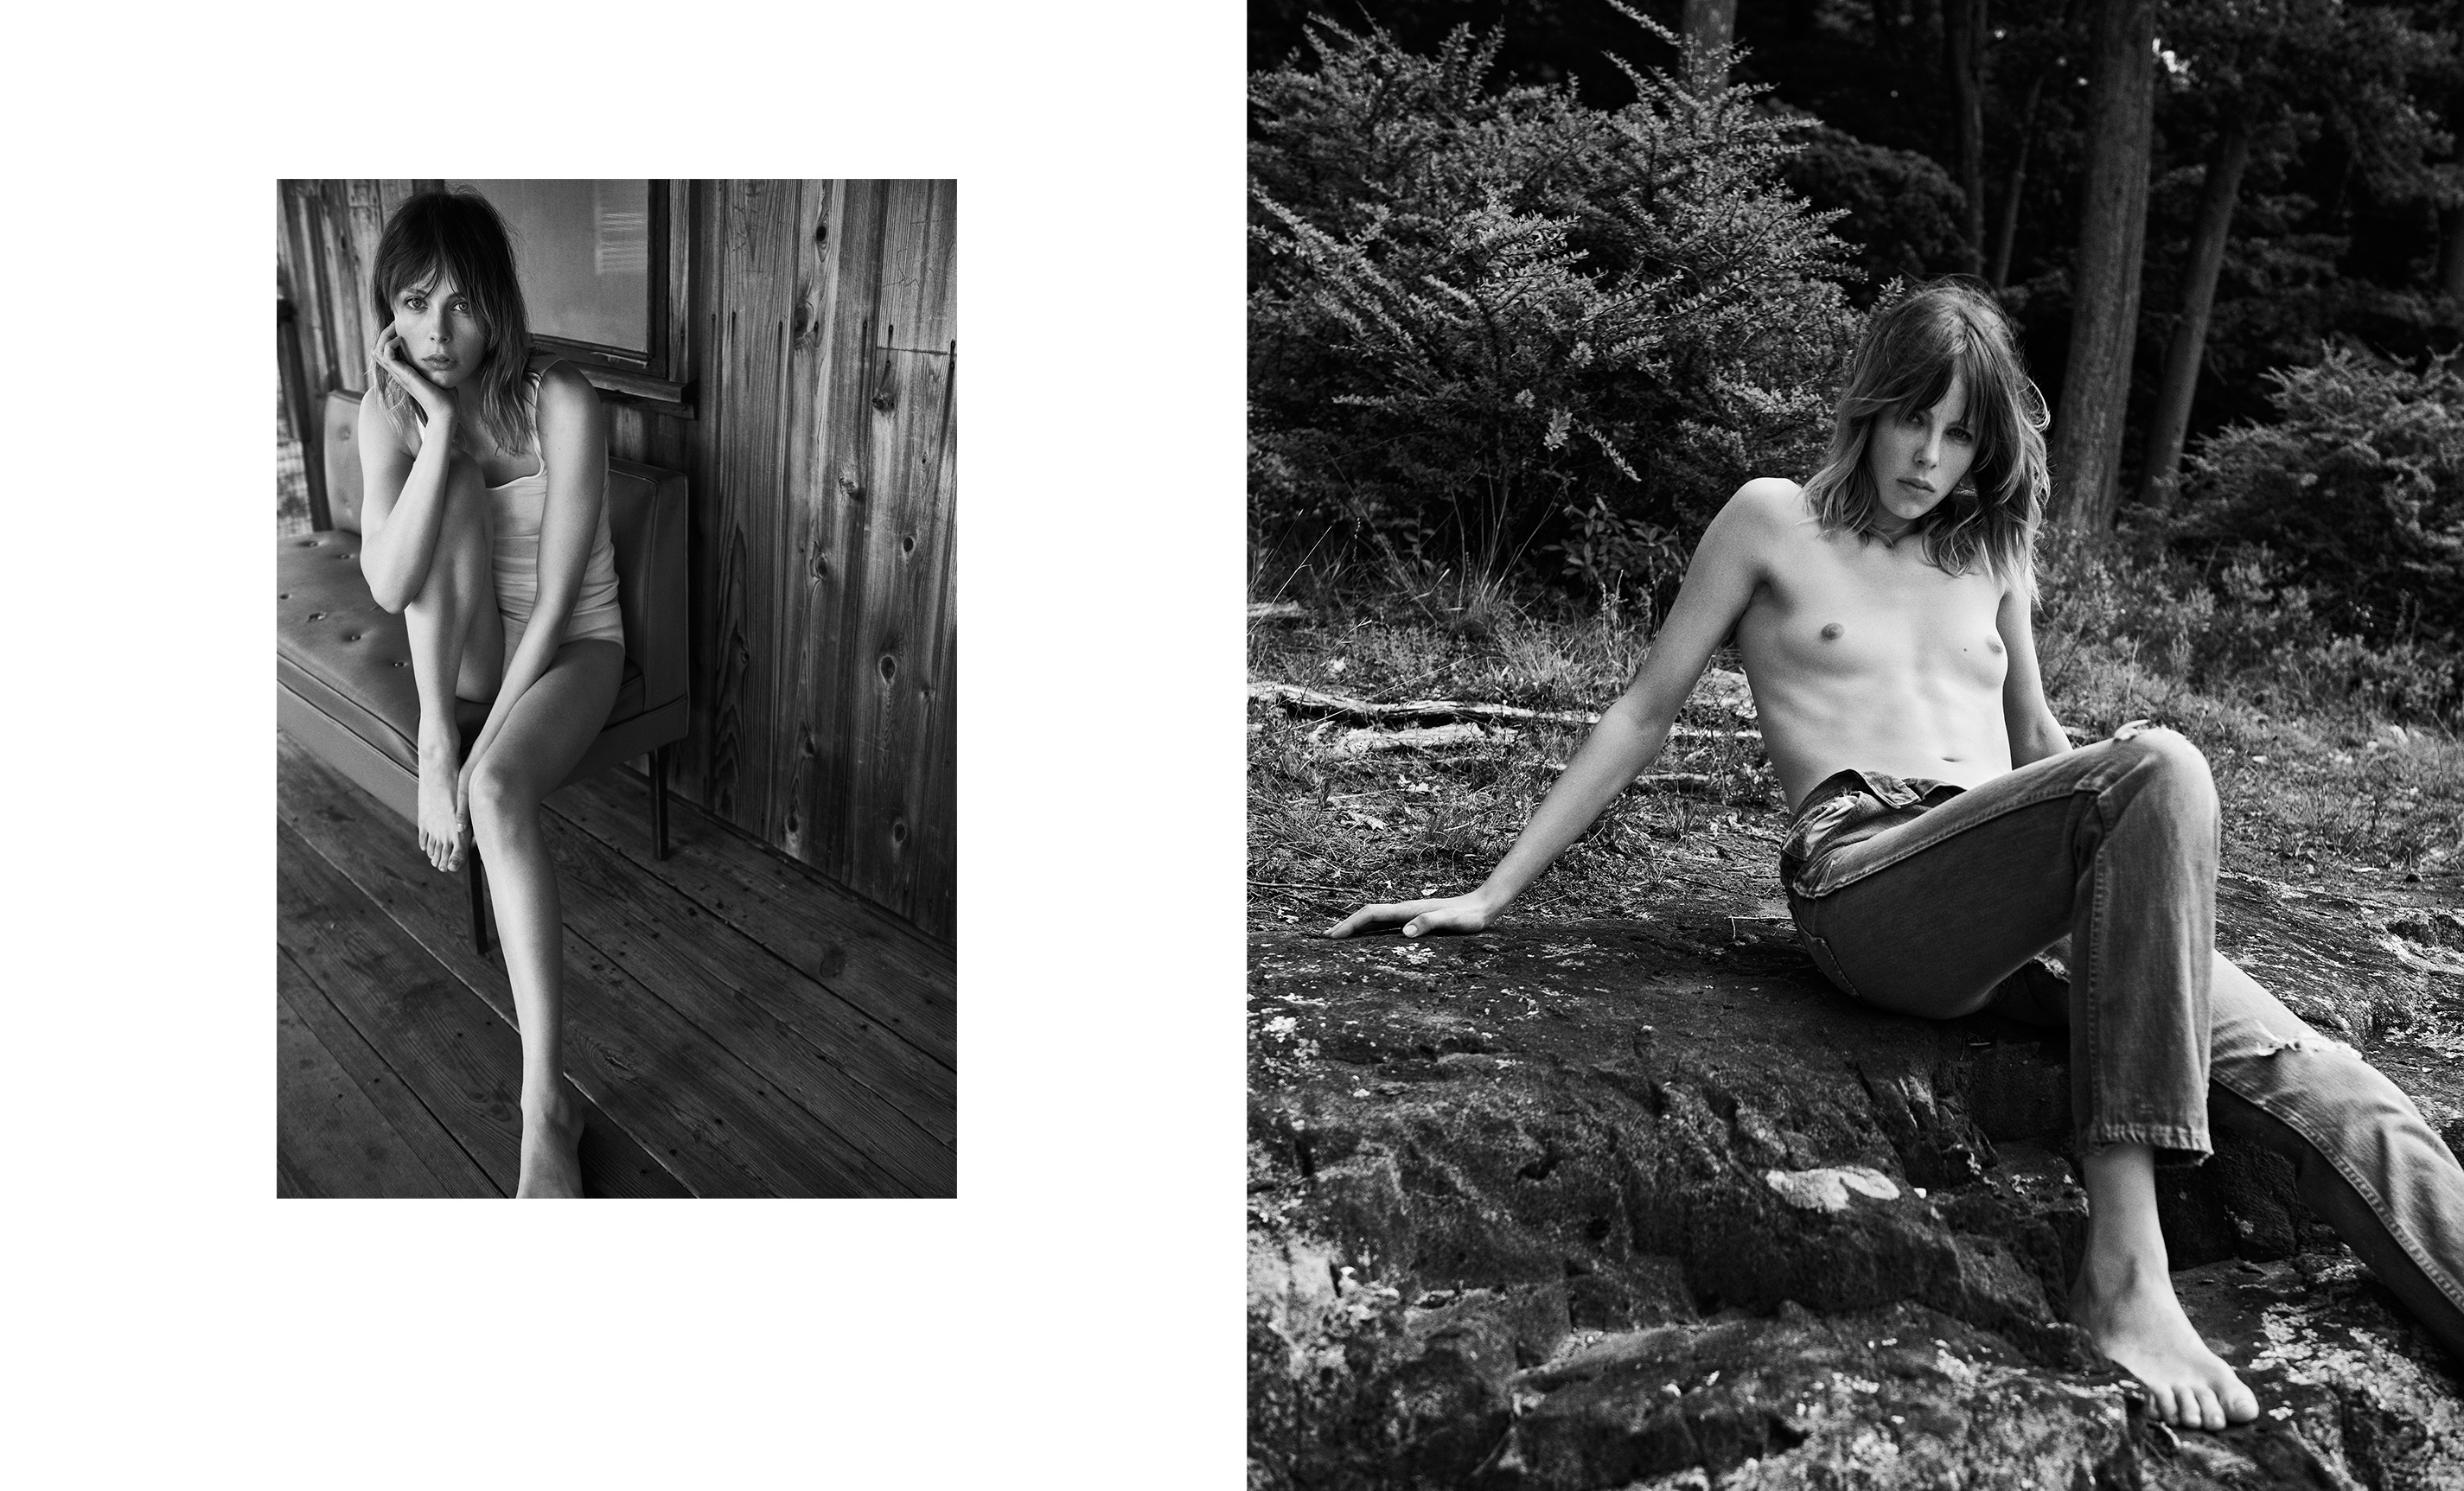 Kera sedgwick nude 👉 👌 Kyra Sedgwick nude, naked, голая, обн